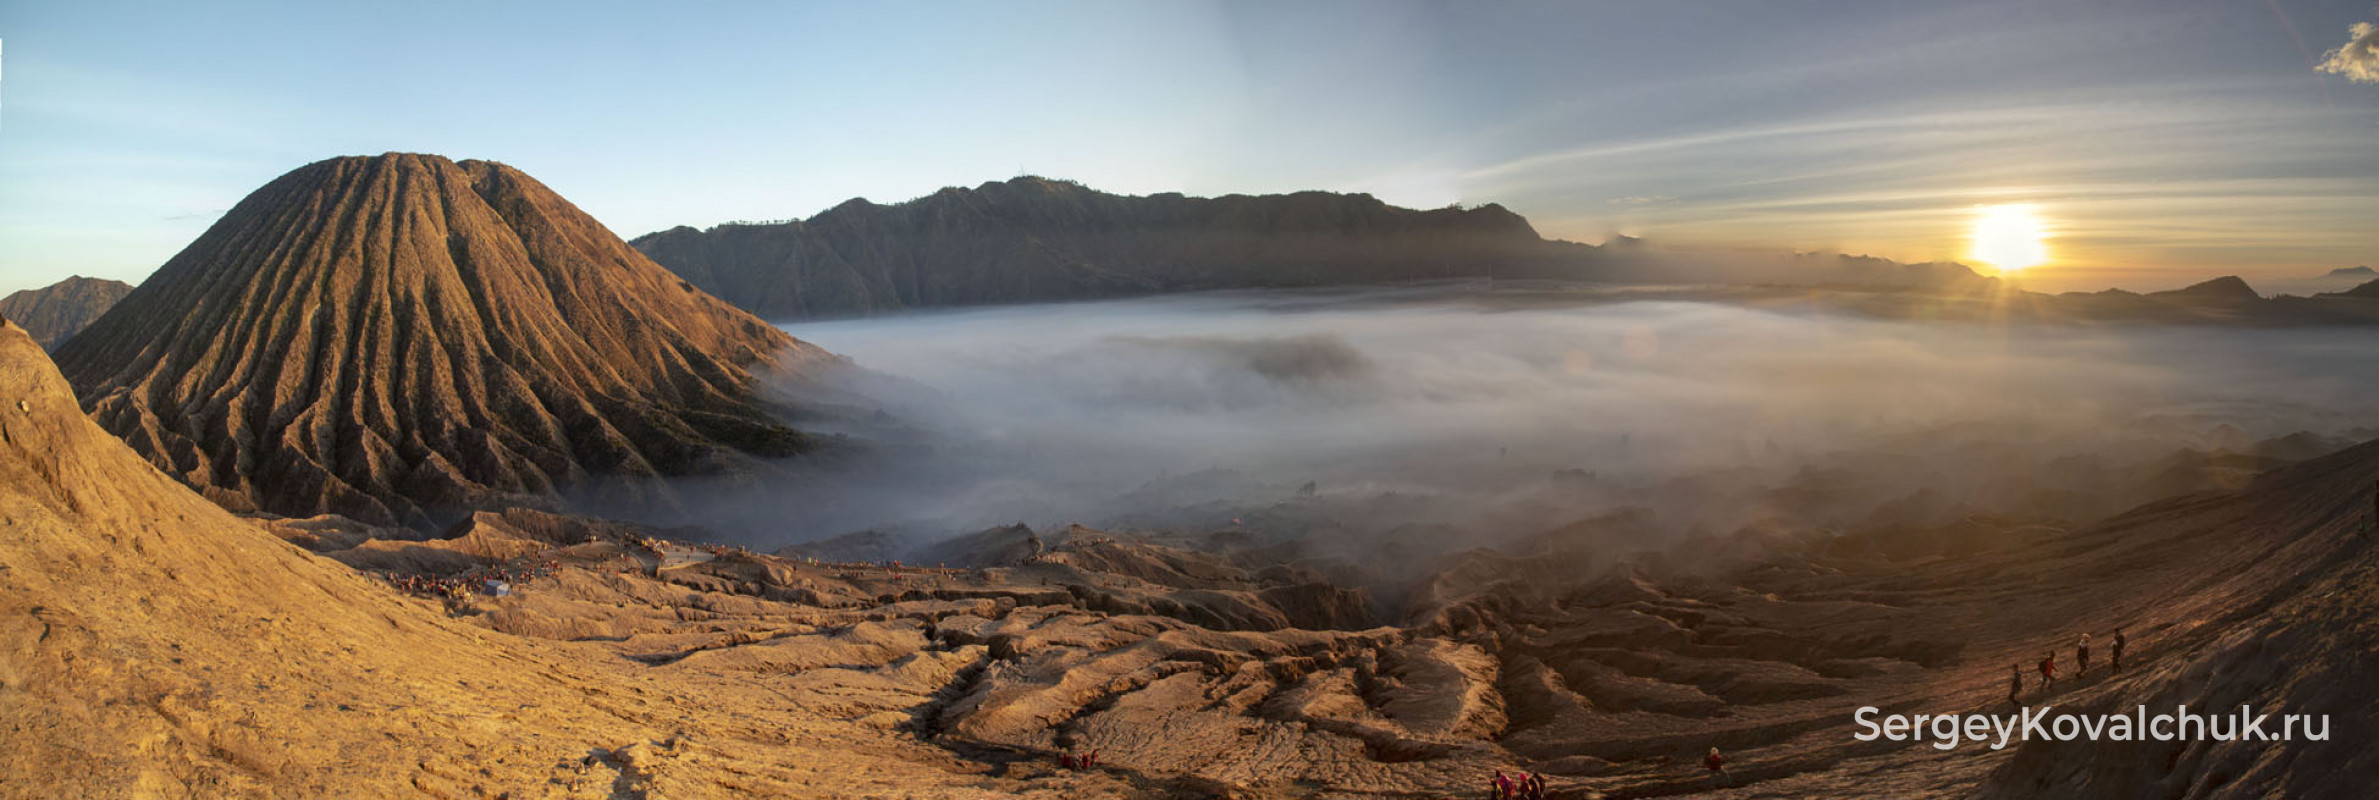 Вид на Национальный парк и вулкан Семеру